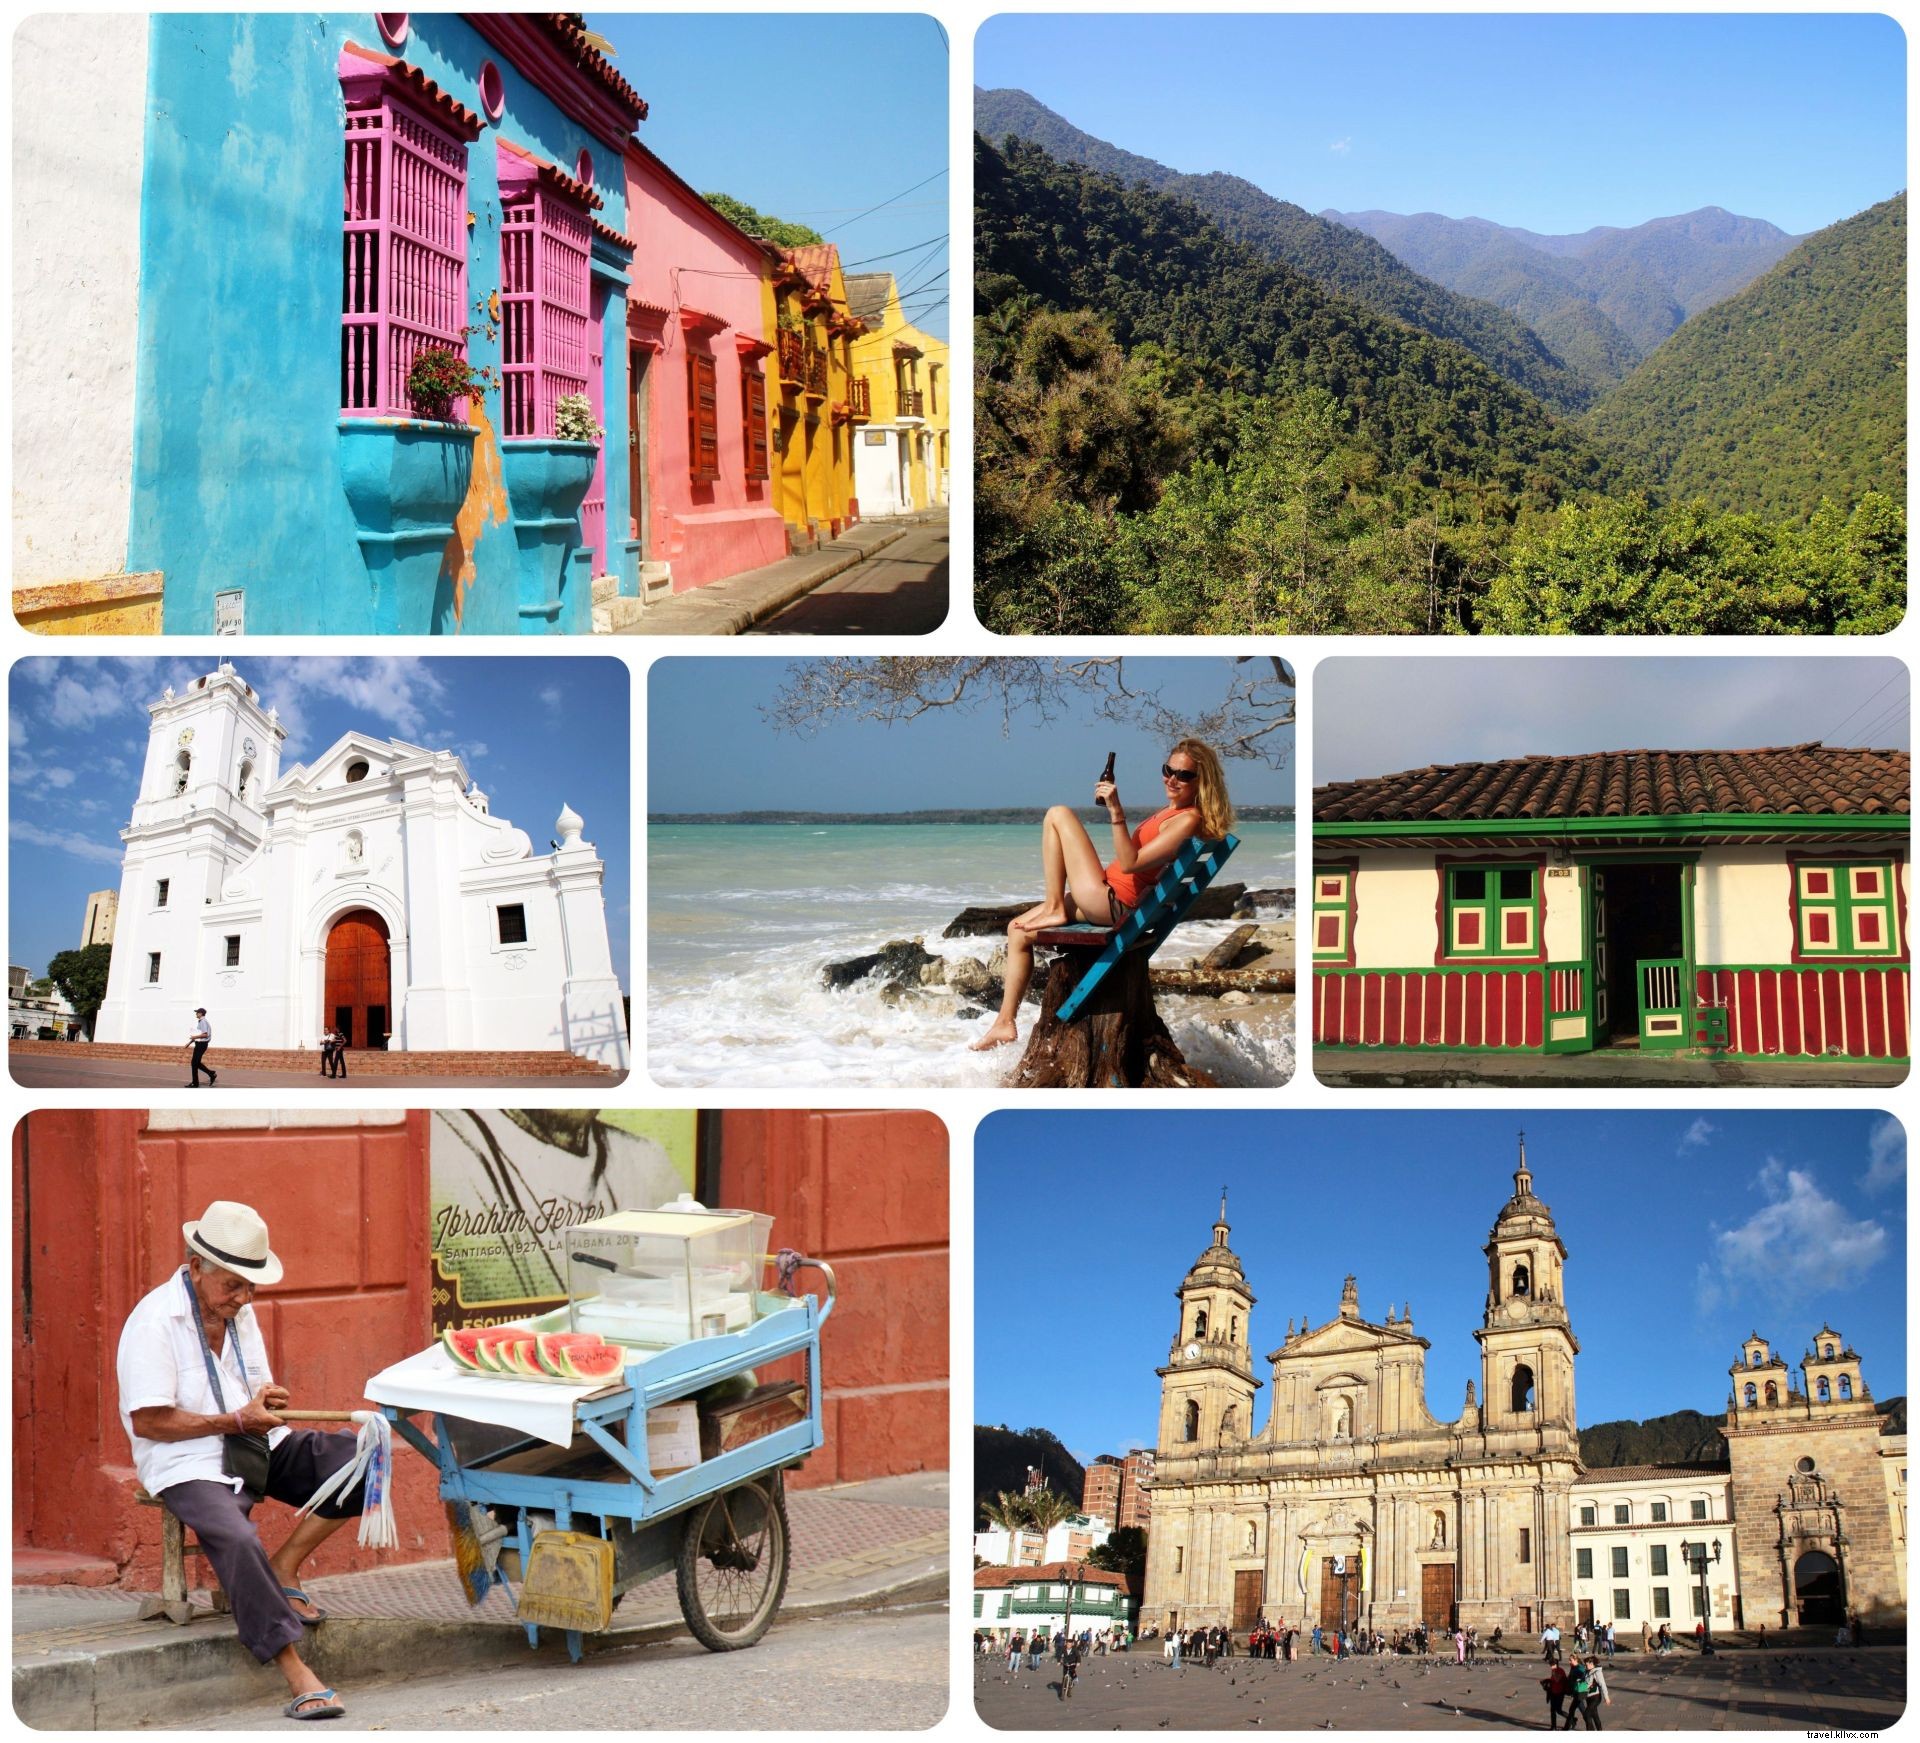 Destaques da Colômbia:meus 13 momentos de viagem favoritos na Colômbia